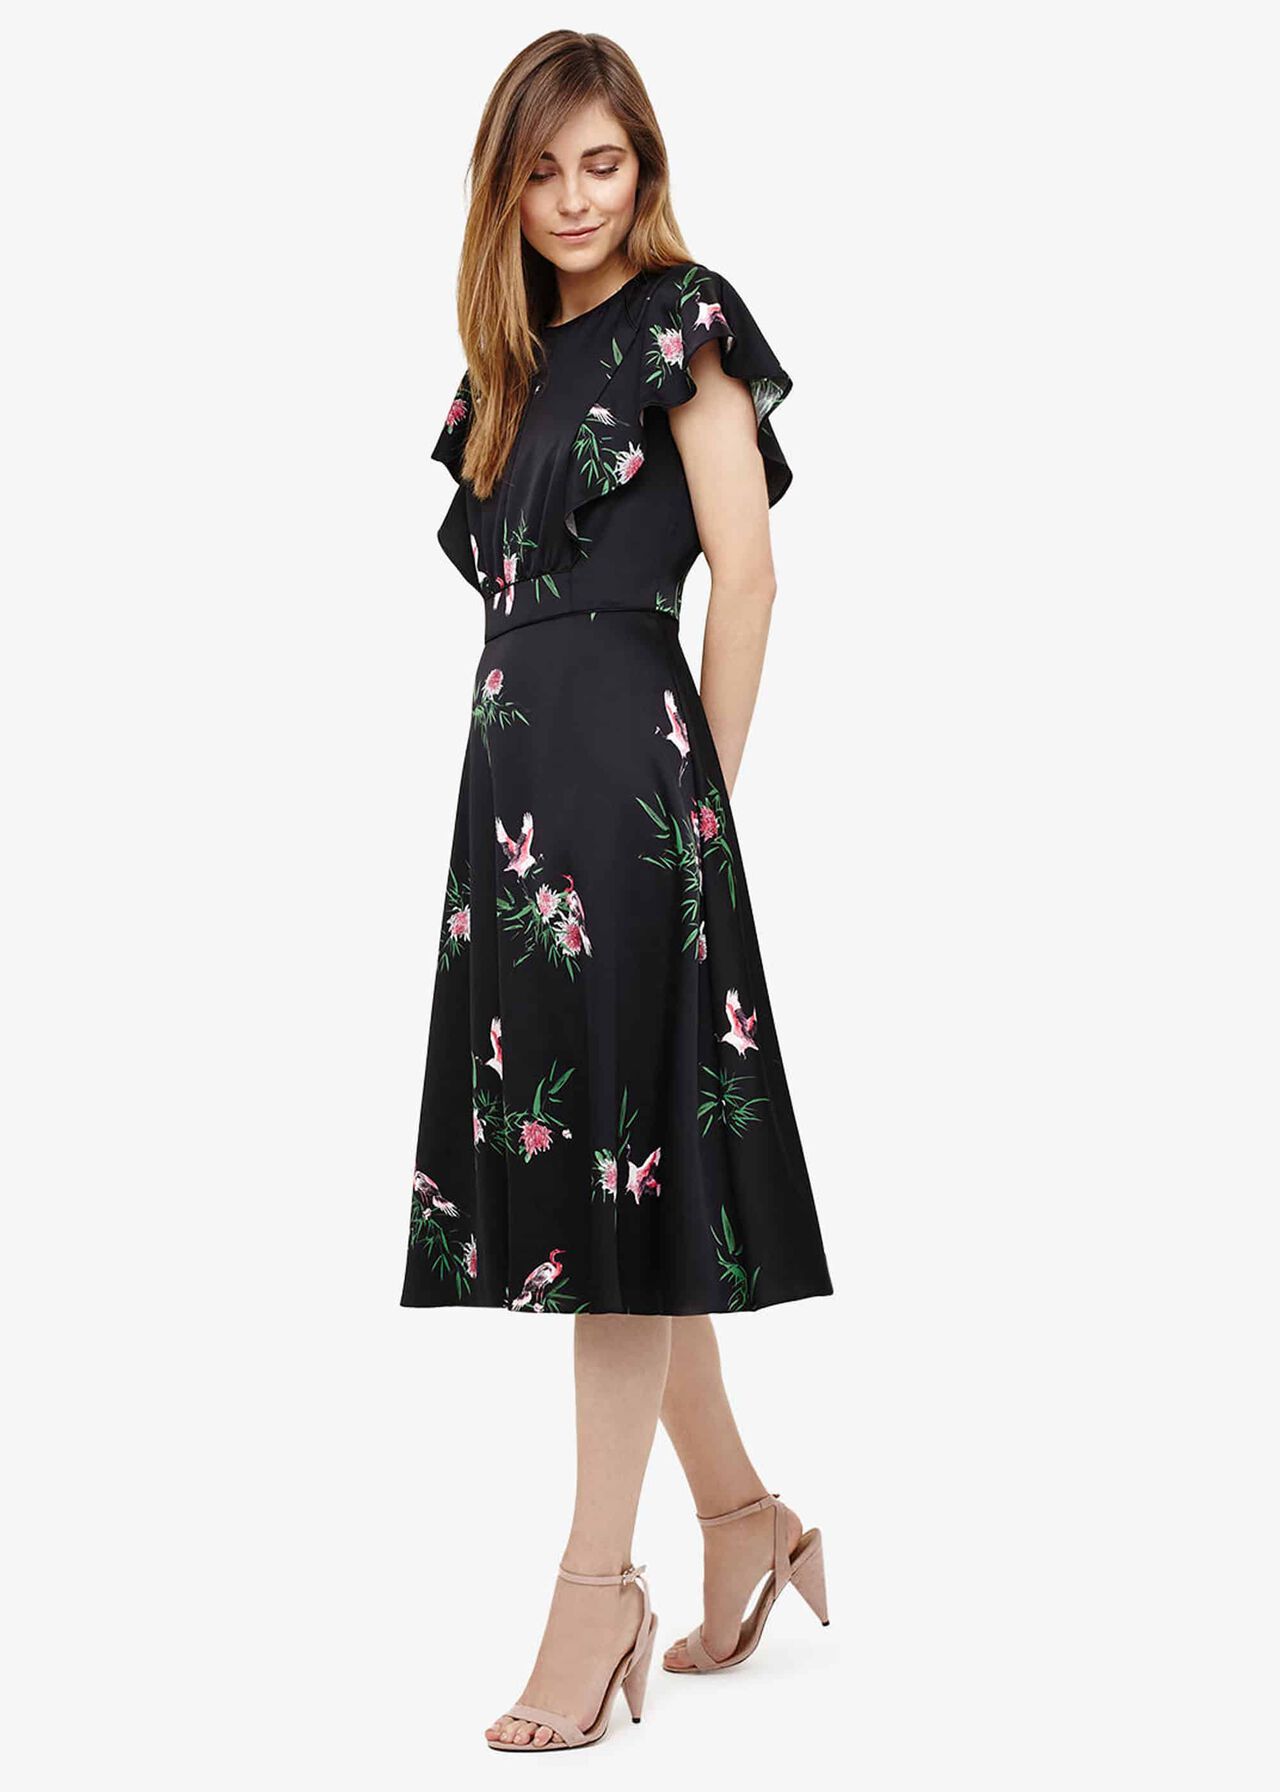 Gwendolyn Floral Print Dress